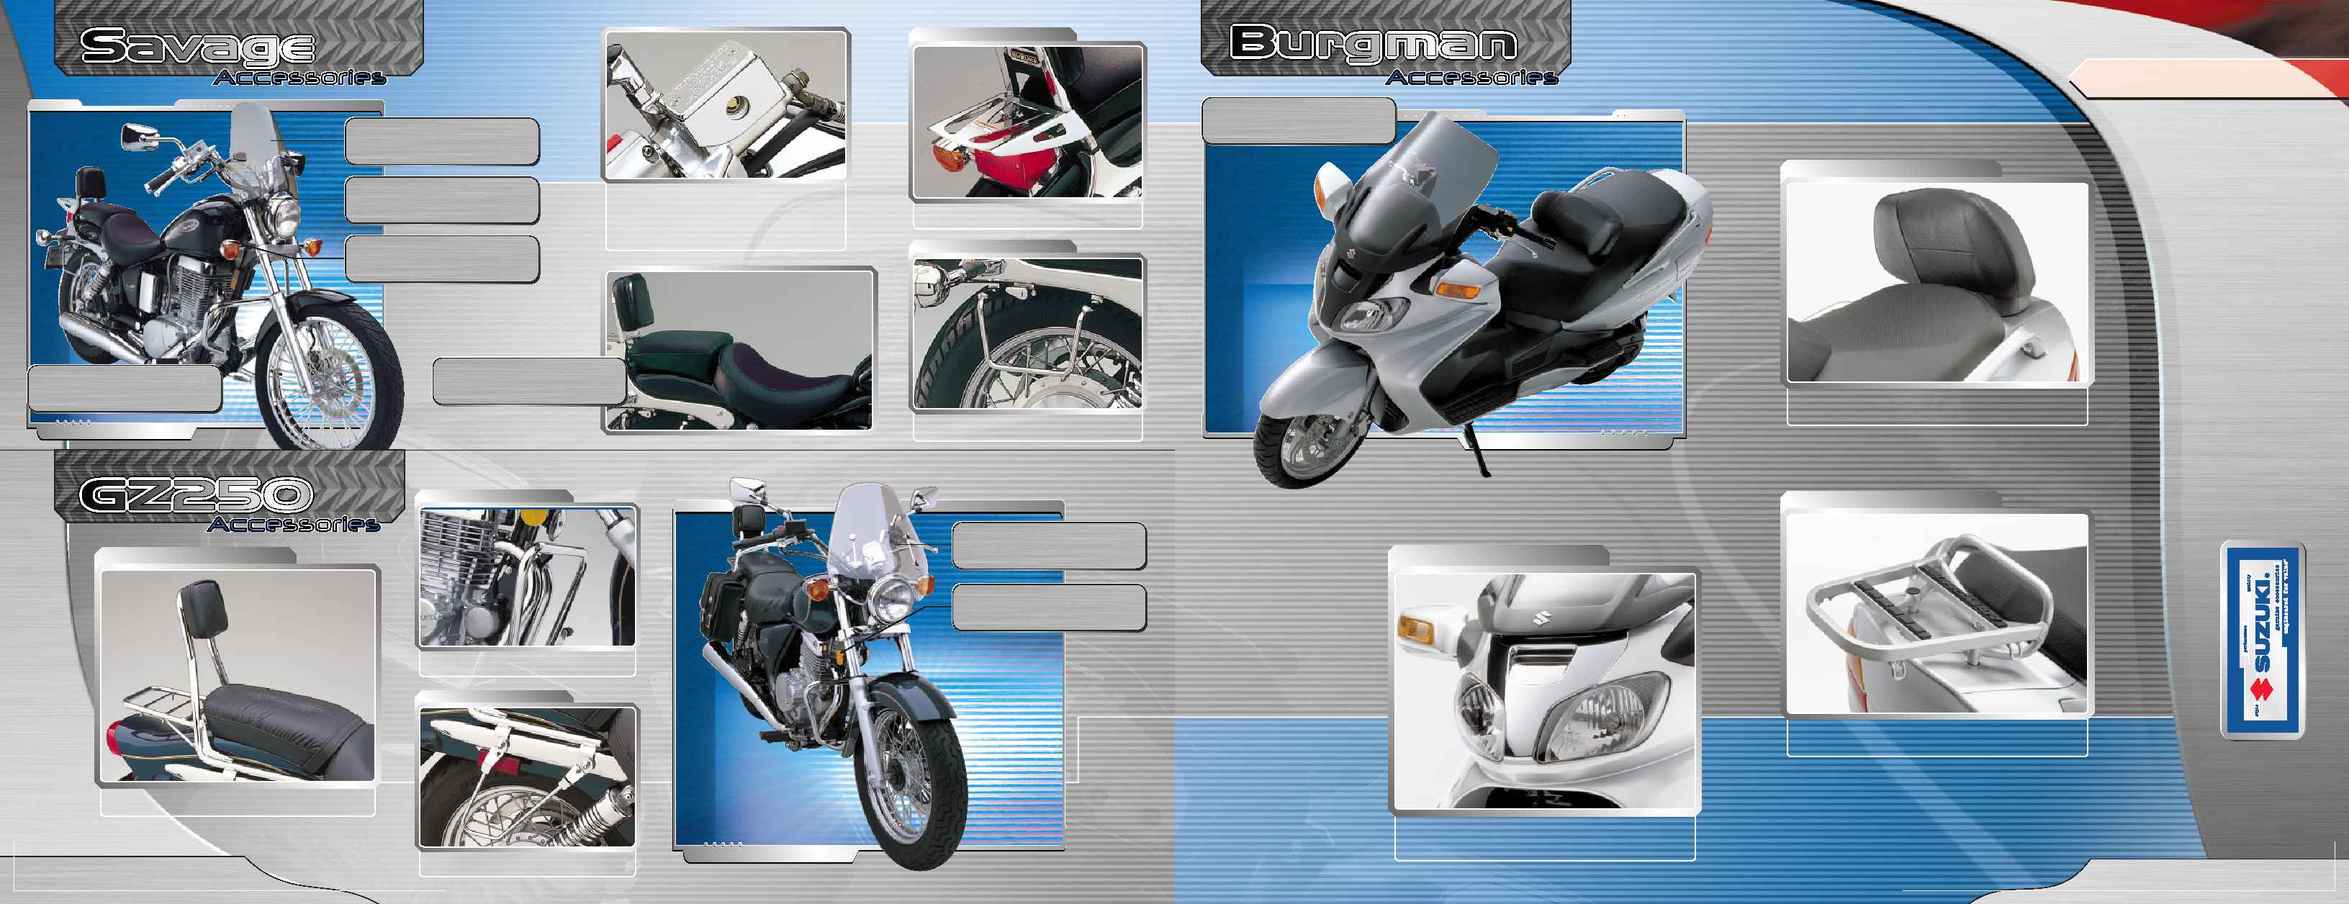 Suzuki - 2003 mc Access brochure E